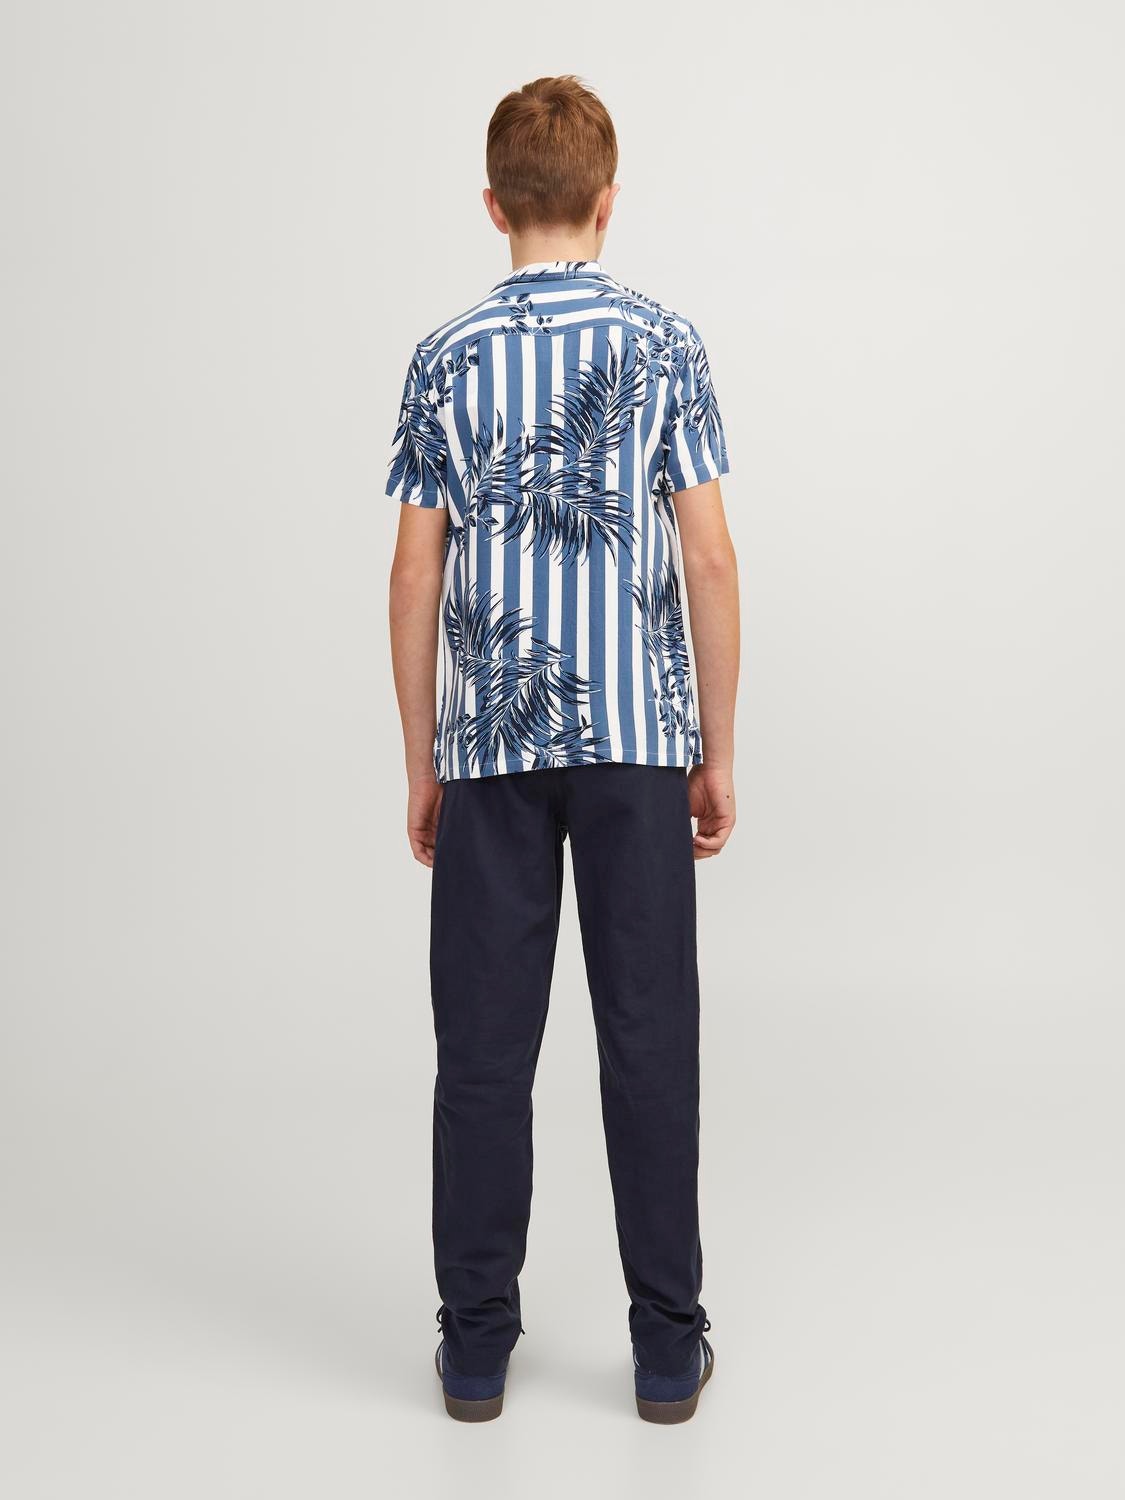 Jack & Jones Overhemd Voor jongens -Ensign Blue - 12248941